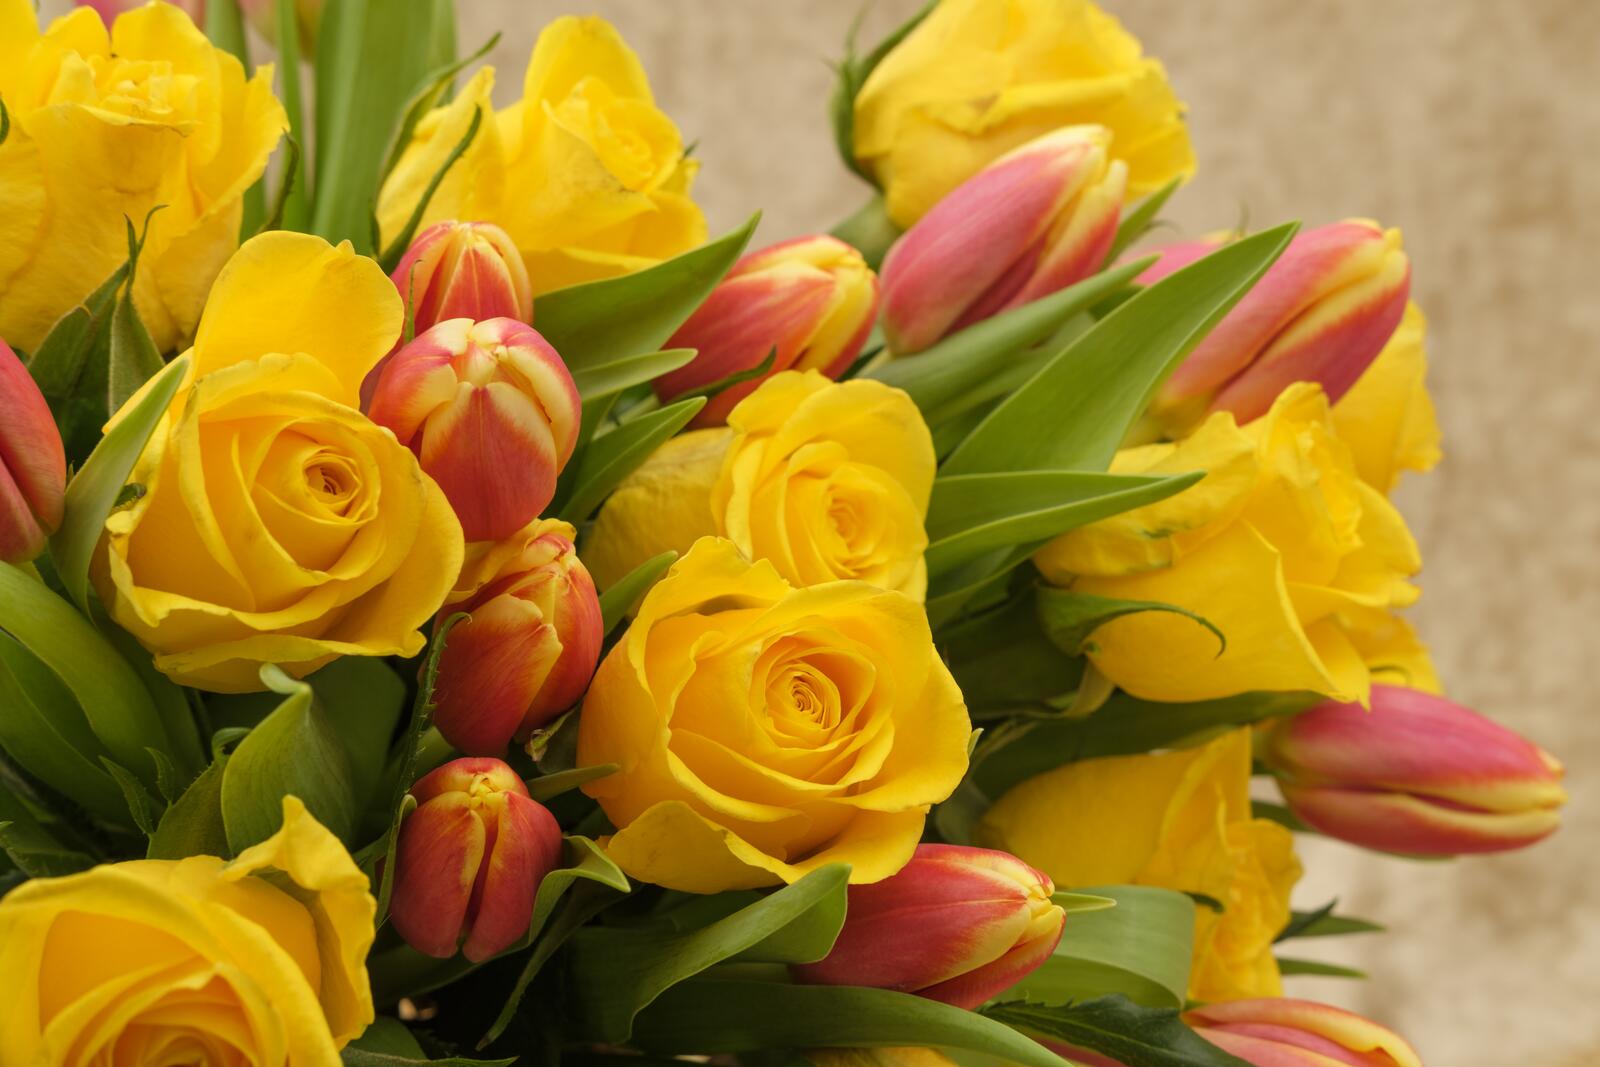 Обои флора икебана тюльпаны на рабочий стол